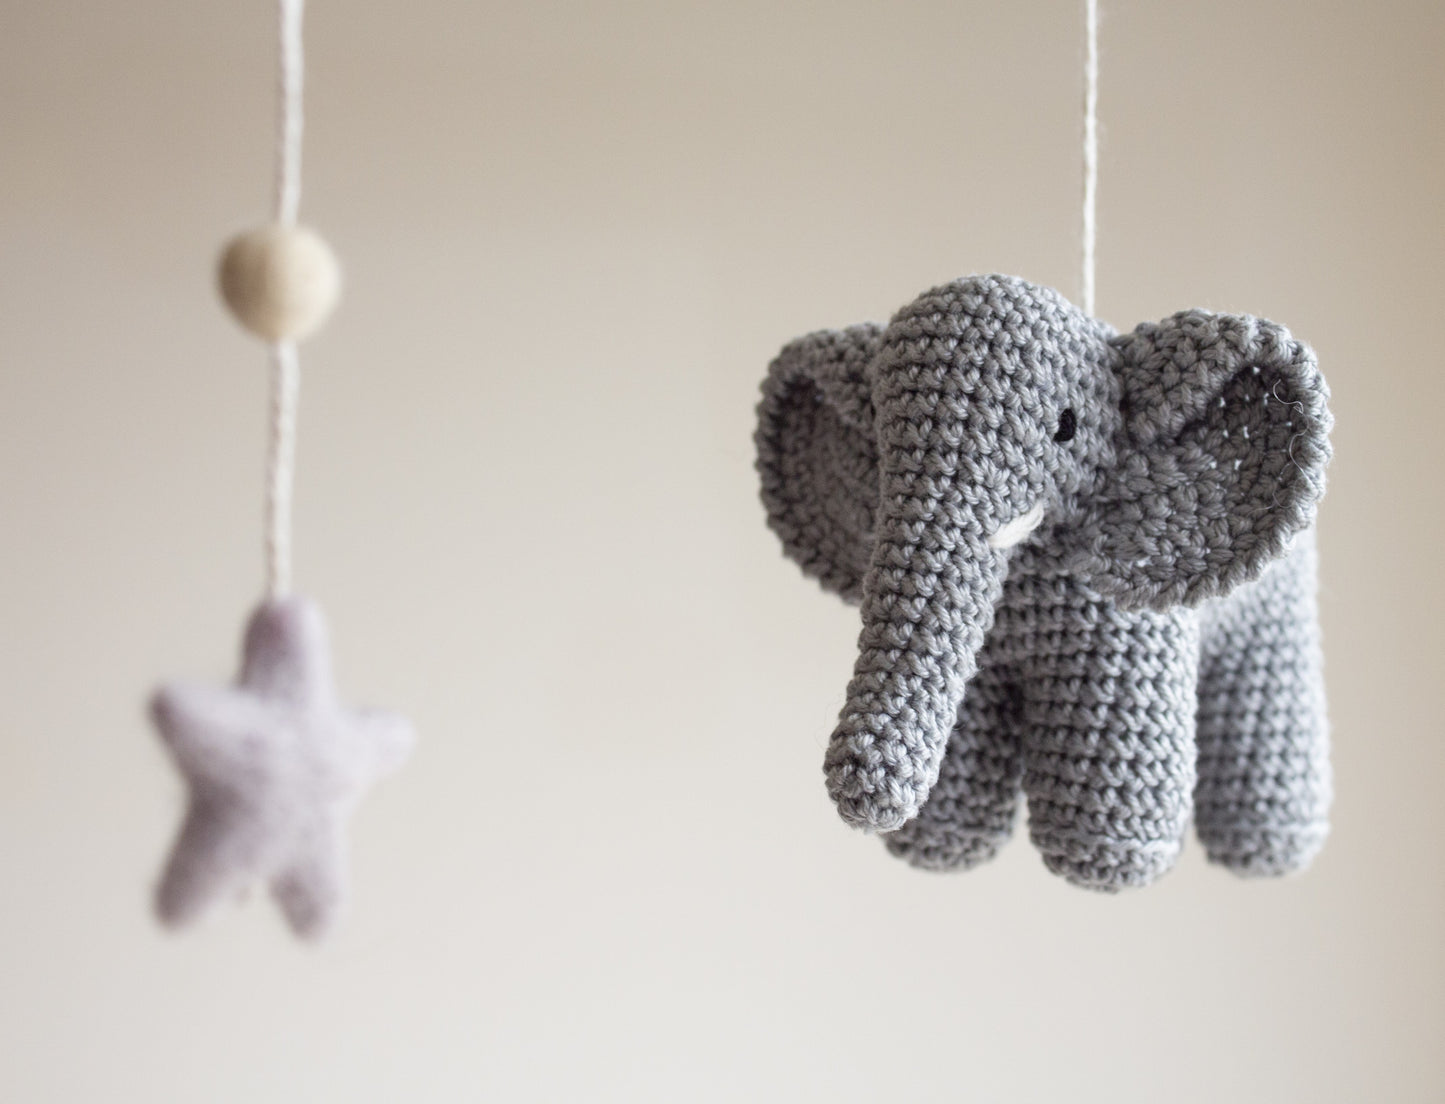 Elephants nursery mobile